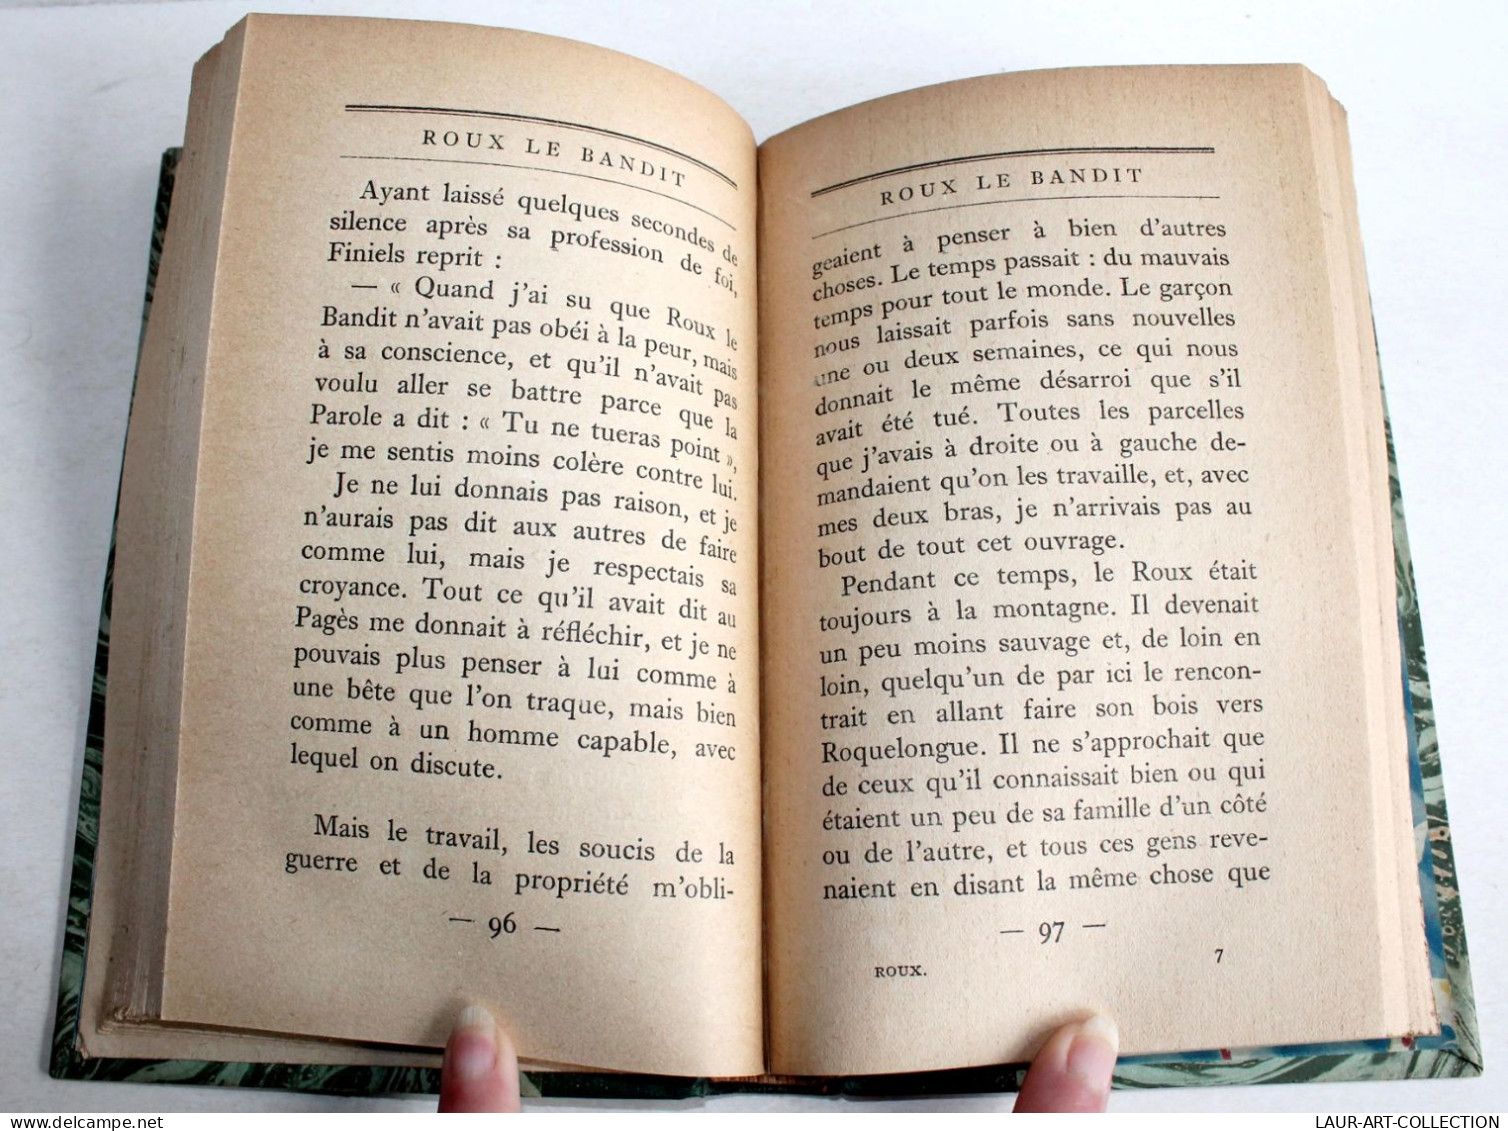 ROUX LE BANDIT Par ANDRE CHAMSON 1925 BERNARD GRASSET EDITEUR, EDITION ORIGINALE / LIVRE ANCIEN XXe SIECLE (1303.44) - 1901-1940